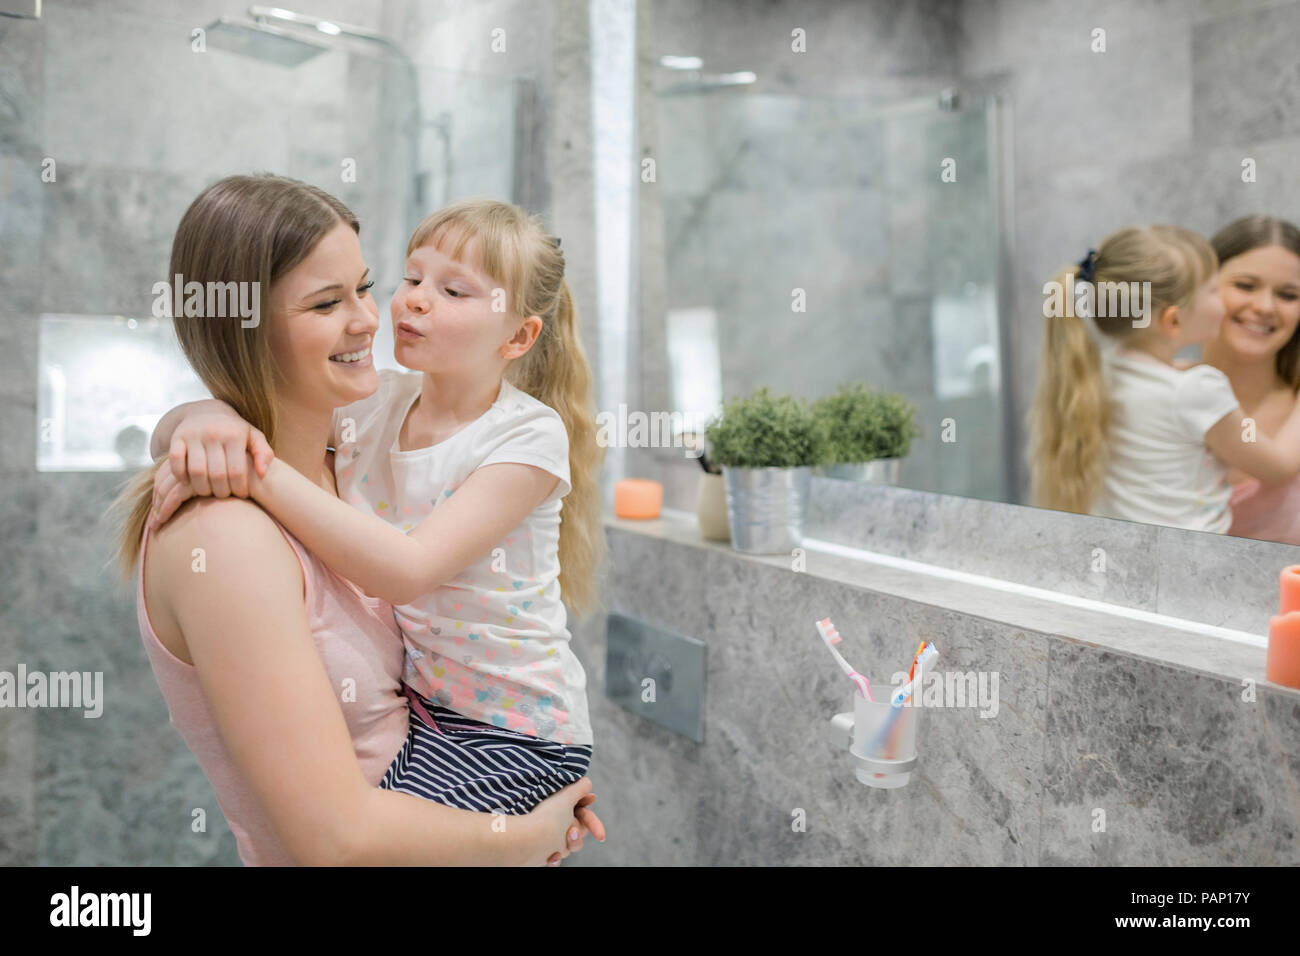 Petite fille embrassant sa maman dans la salle de bains Banque D'Images